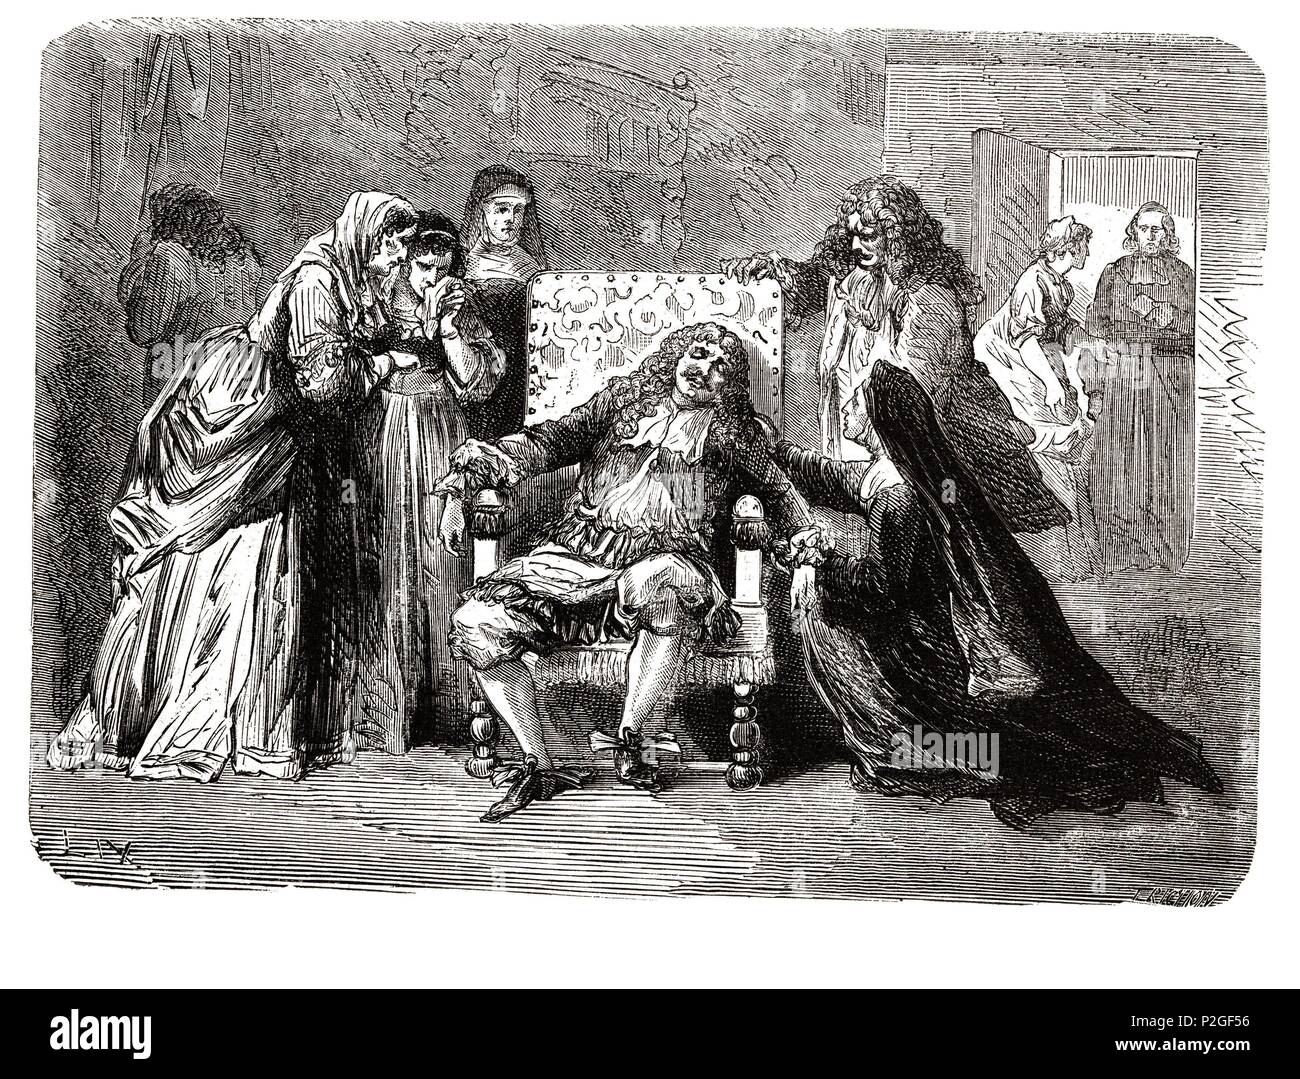 Jean Baptiste Poquelin, llamado "Molière" (1622-1673). Dramaturgo y actor francés. Murió en plena representación de la comedia "El Enfermo Imaginario". Grabado de 1866. Stock Photo